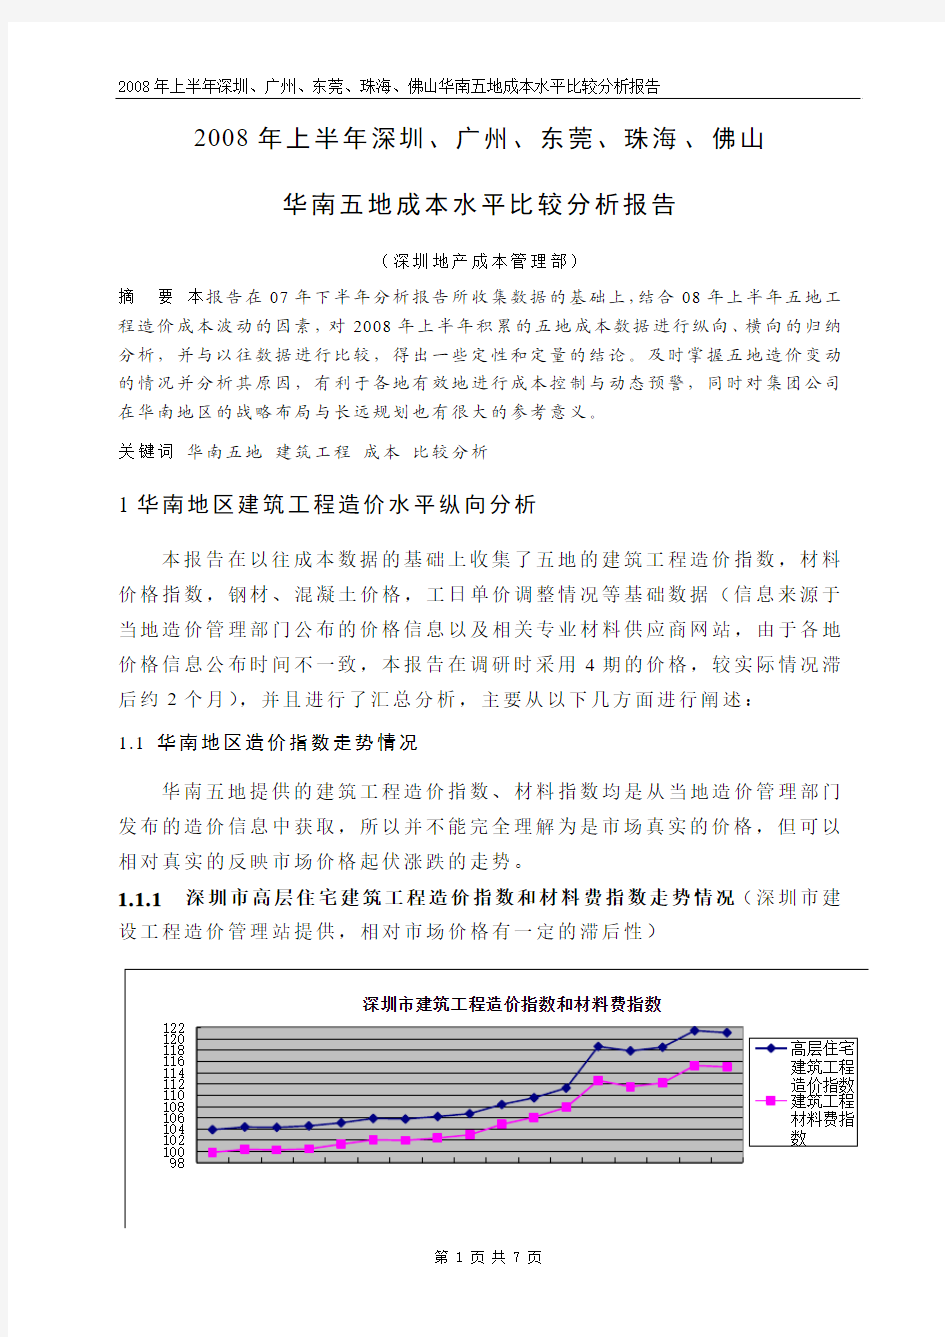 国内几种外保温系统的经济实用性及优缺点分析(深圳贾玲2009.4.21)